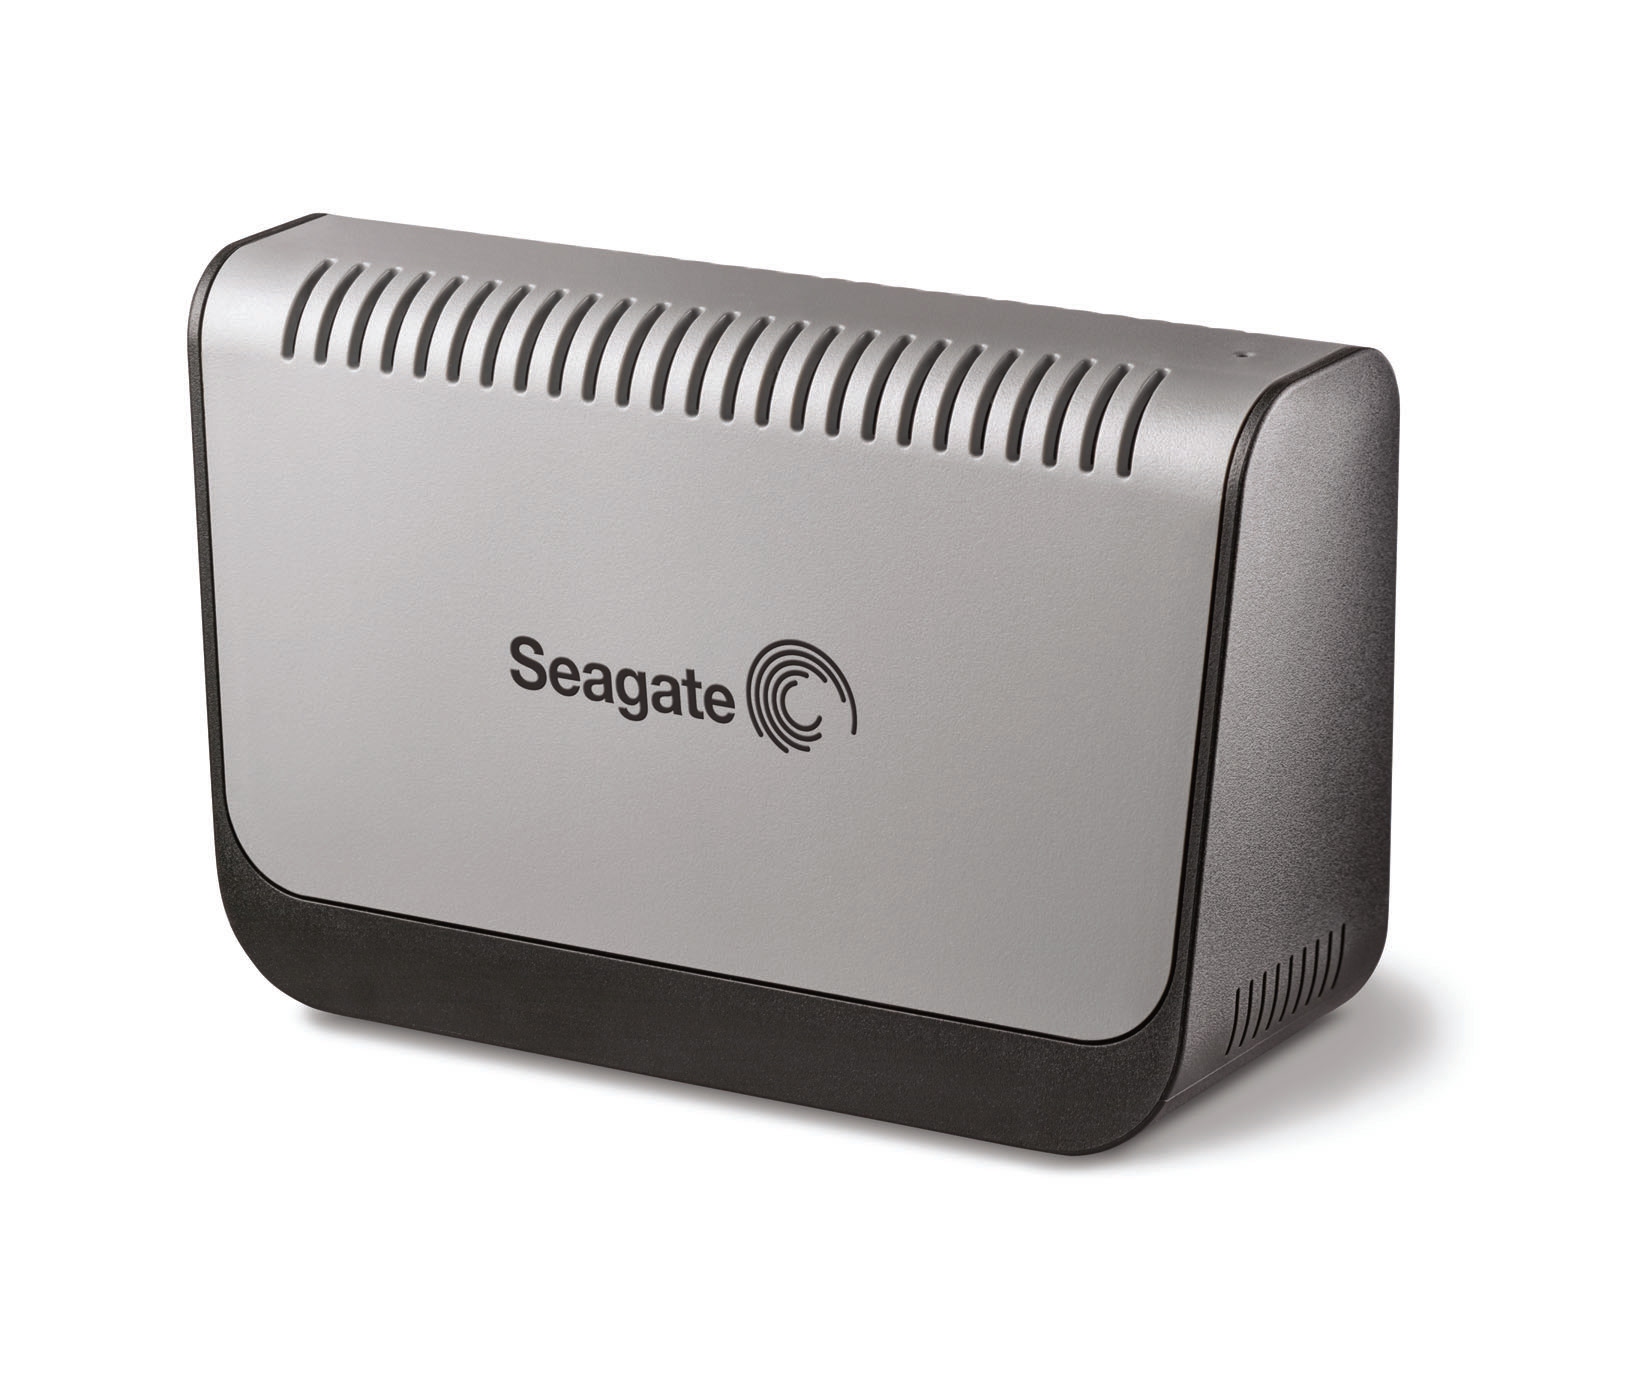 Seagate ST3160203U2-RK